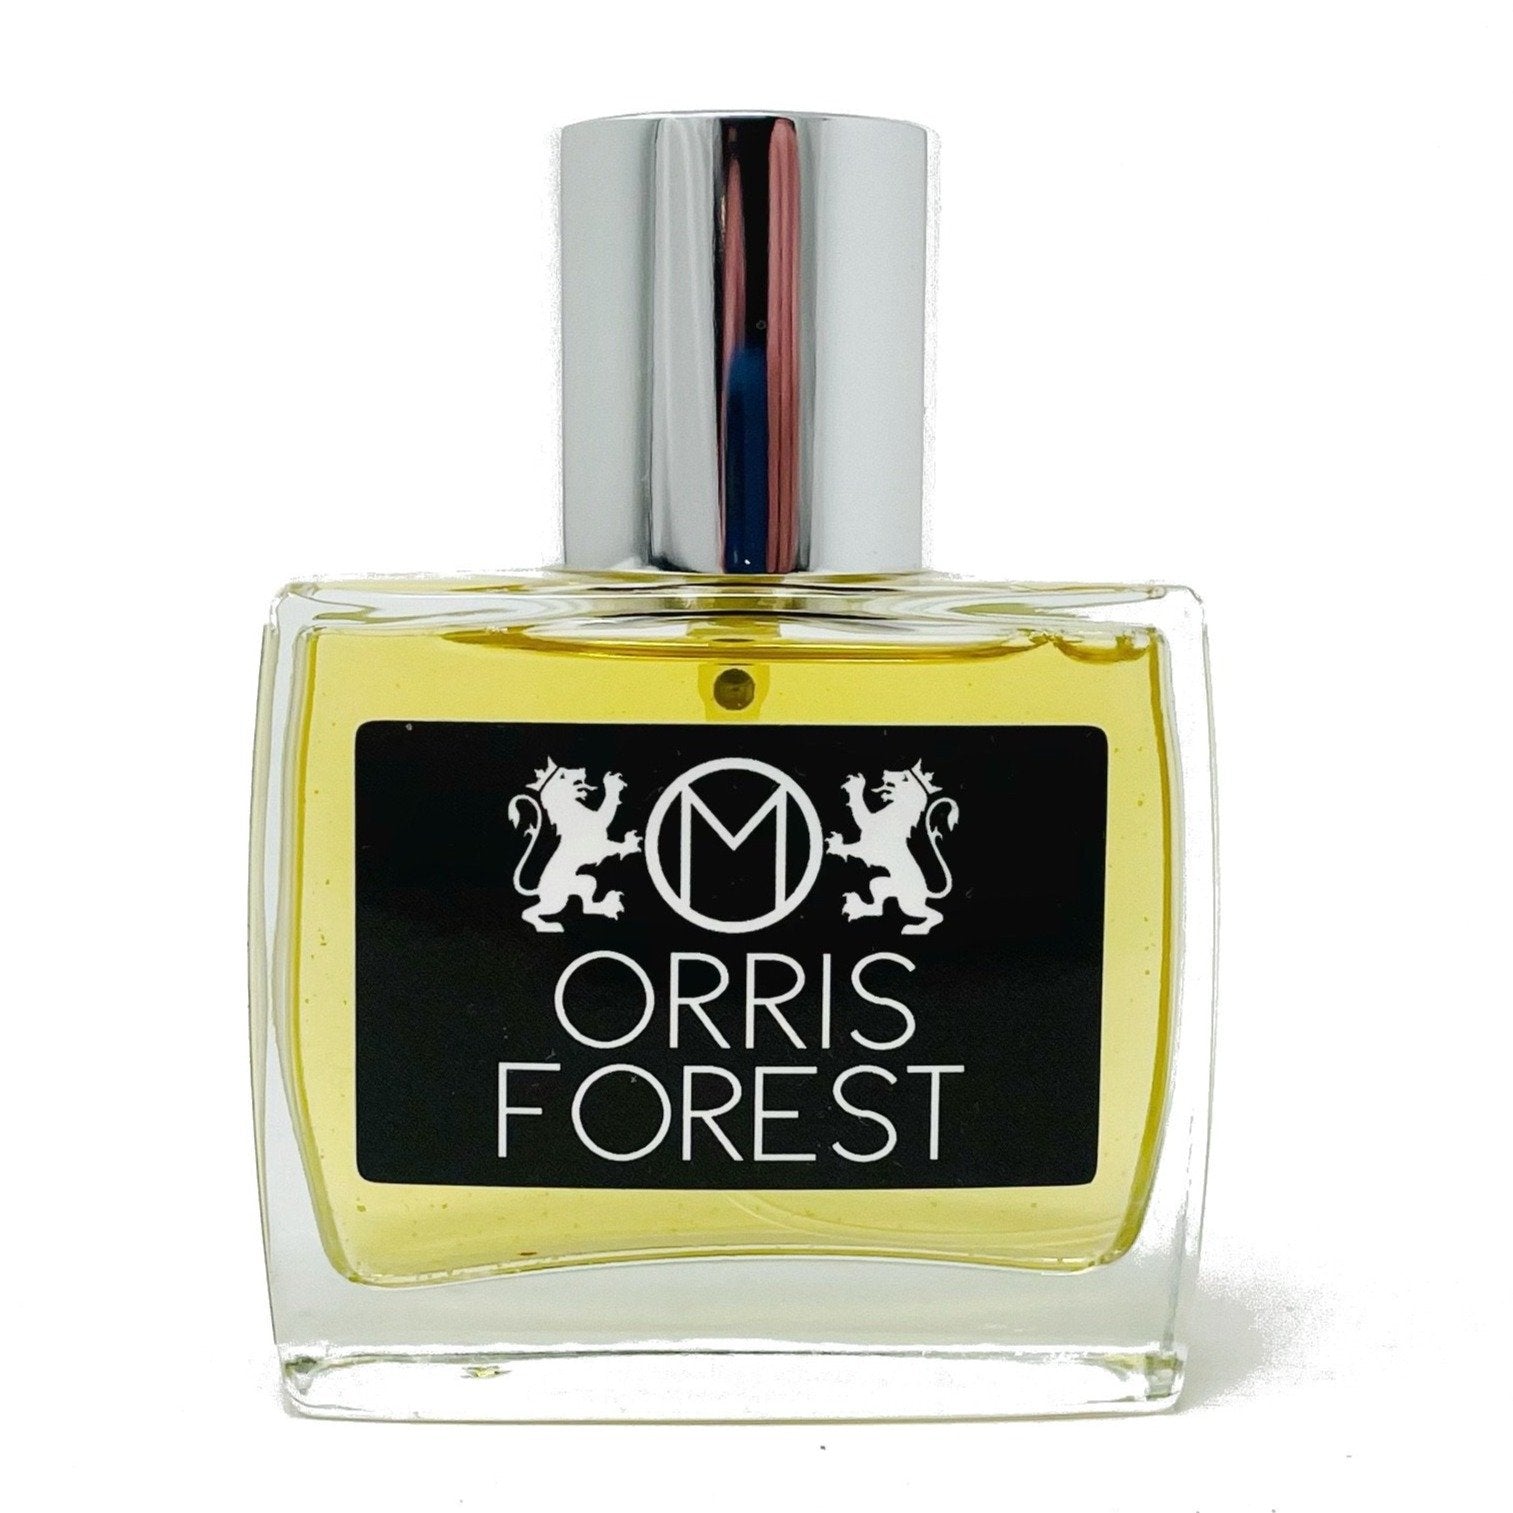 orris forest eau de parfum 50ml